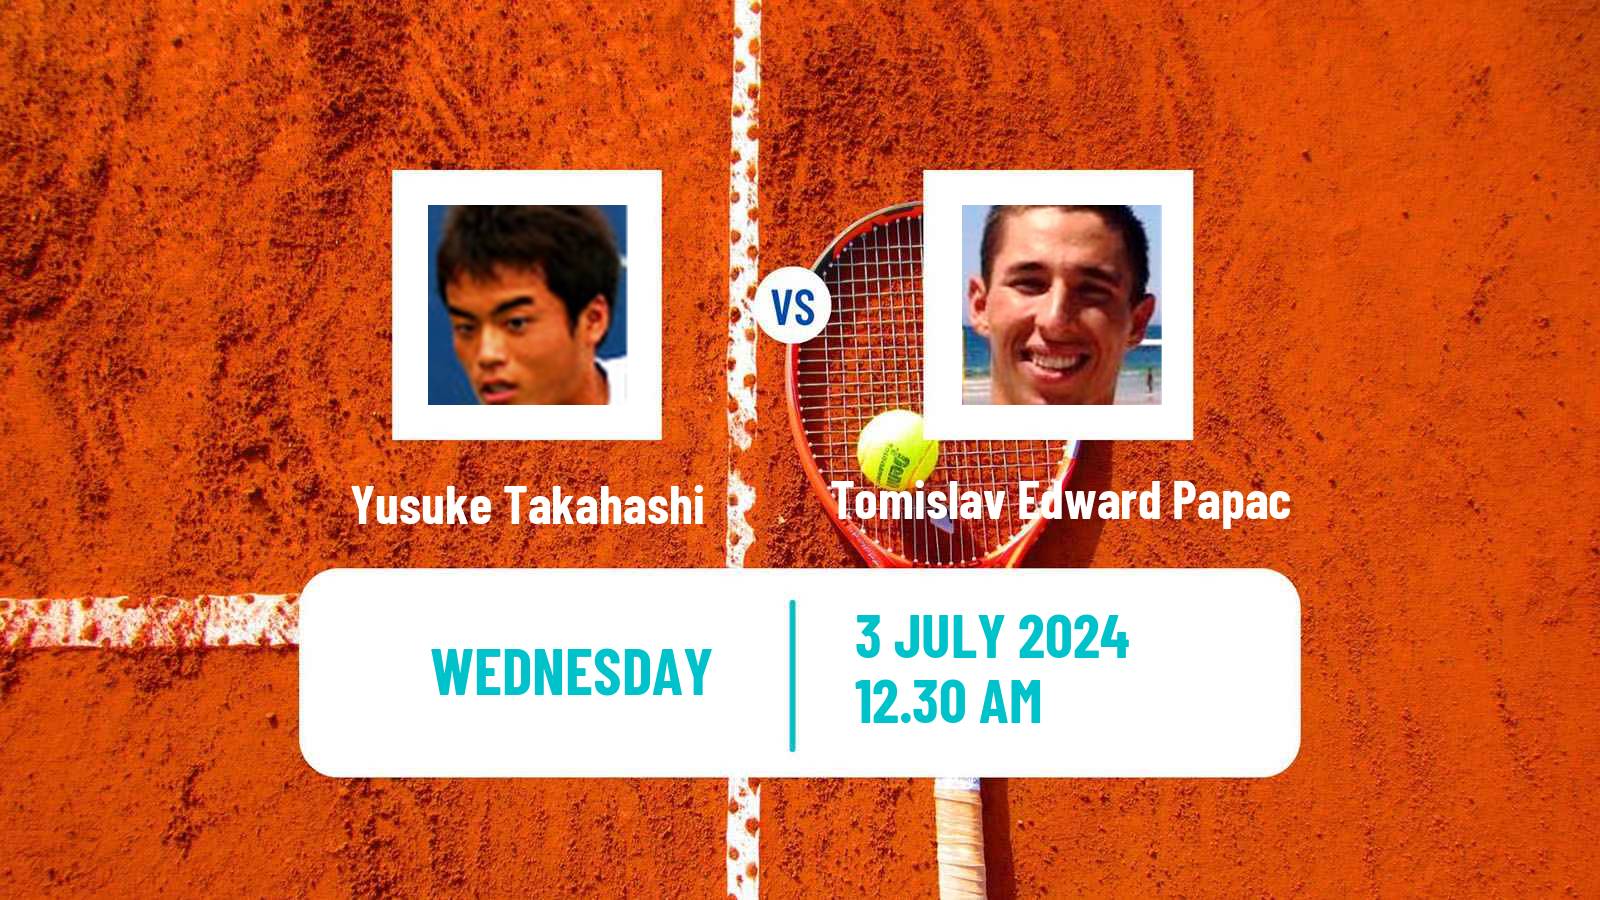 Tennis ITF M15 Tokyo Men Yusuke Takahashi - Tomislav Edward Papac